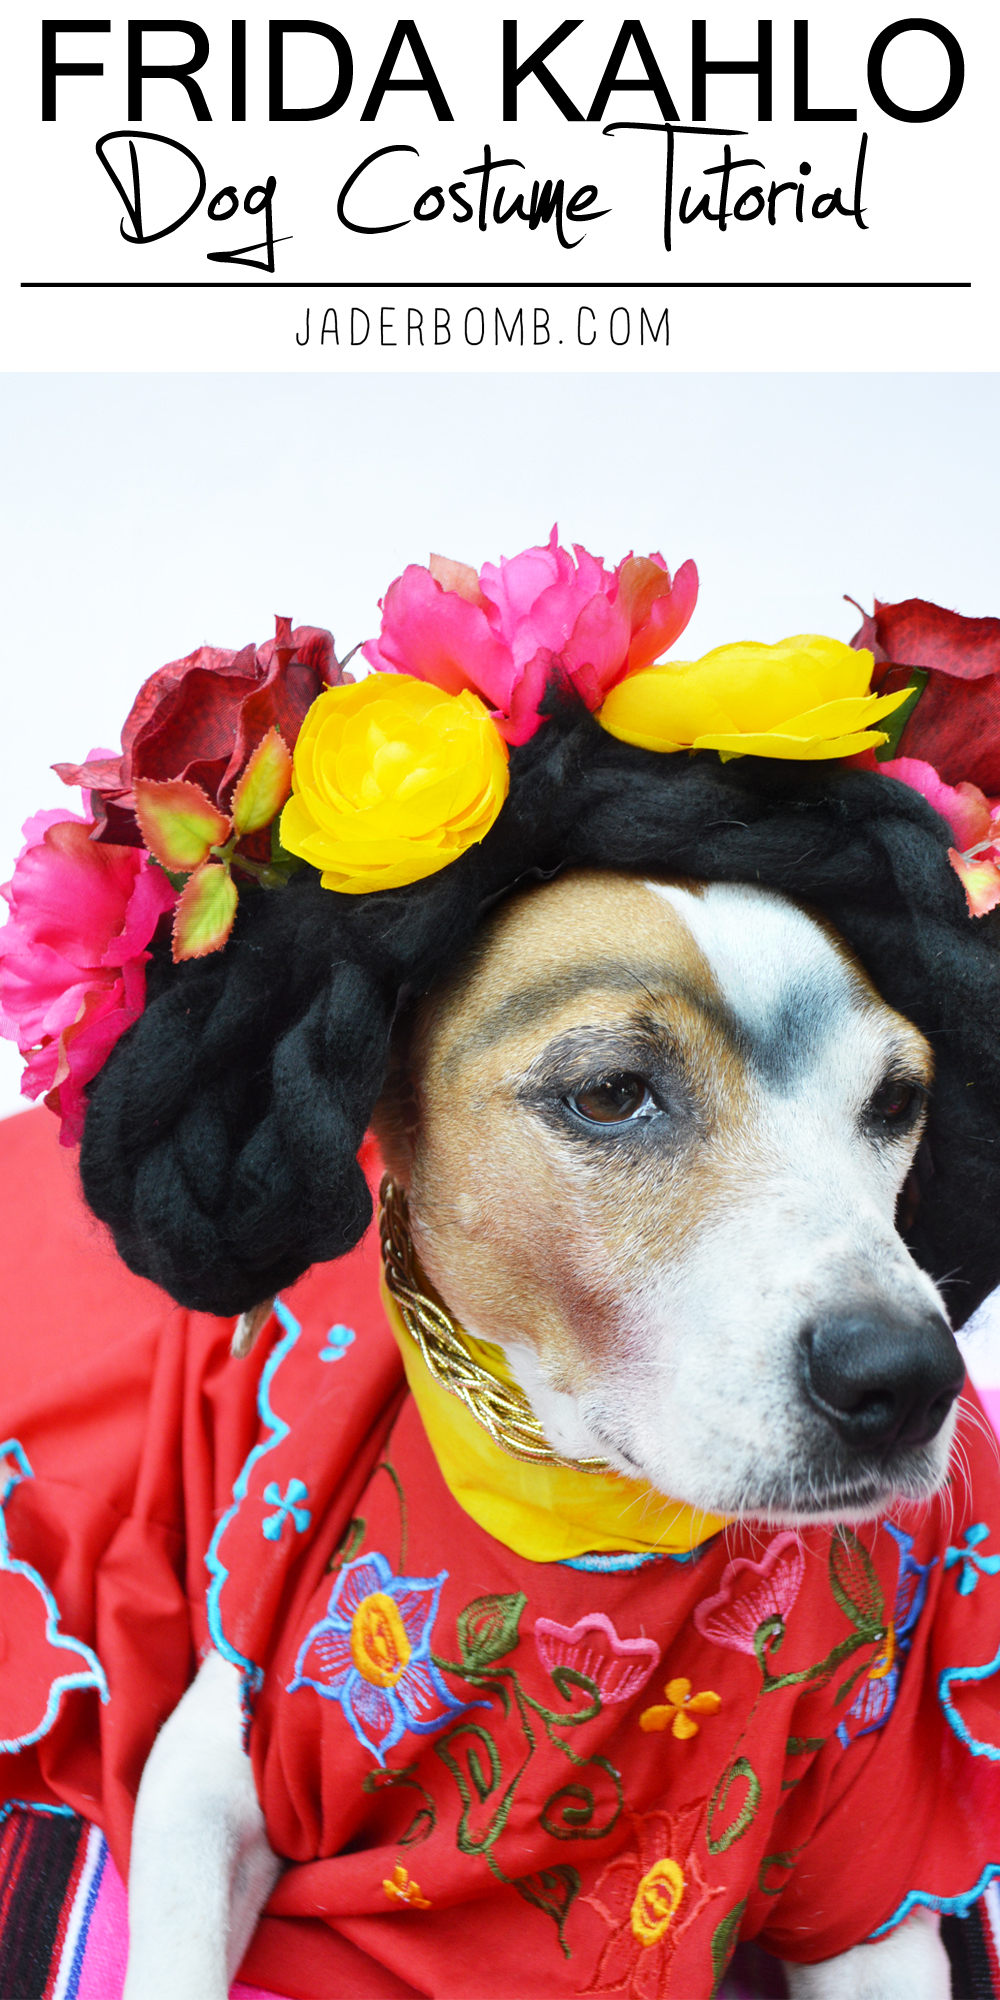 frida kahlo dog costume